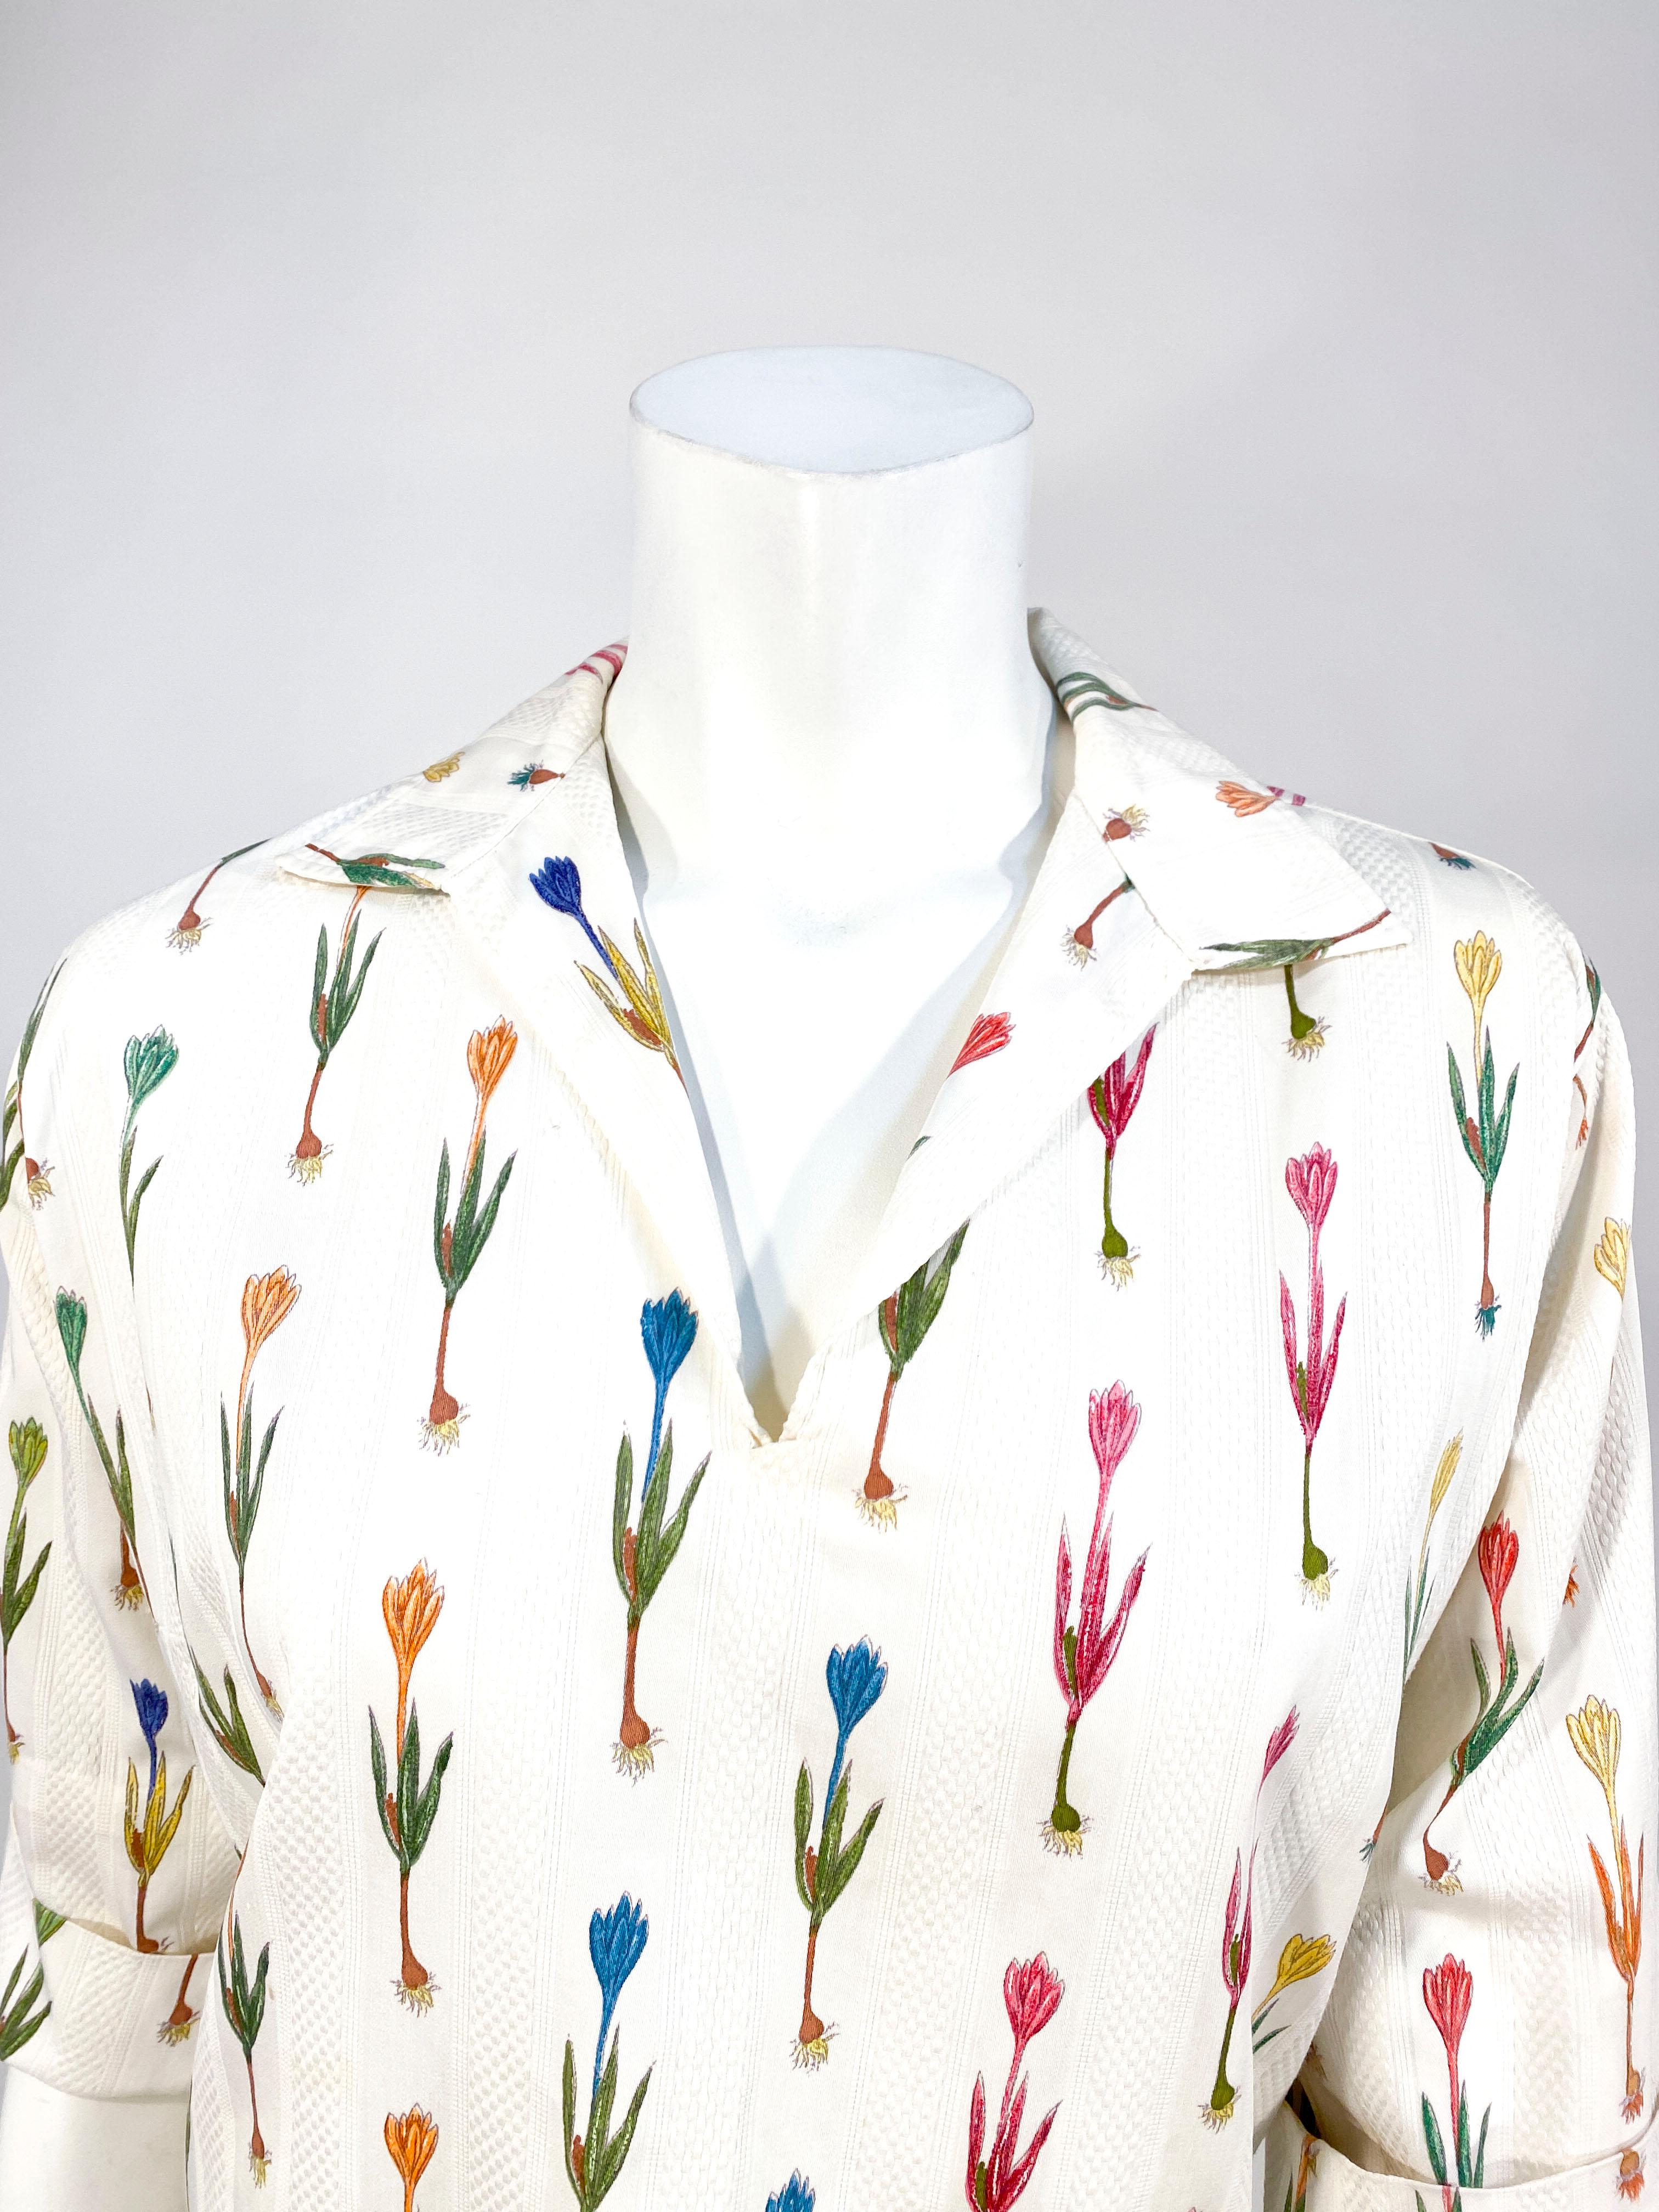 Pull-over I. Magnin en coton blanc cassé de la fin des années 1950 au début des années 1960, avec un motif floral multicolore imprimé à la main et des rayures en texture piquée. Le tissu imprimé fantaisie est originaire d'Italie. Les manches ont une